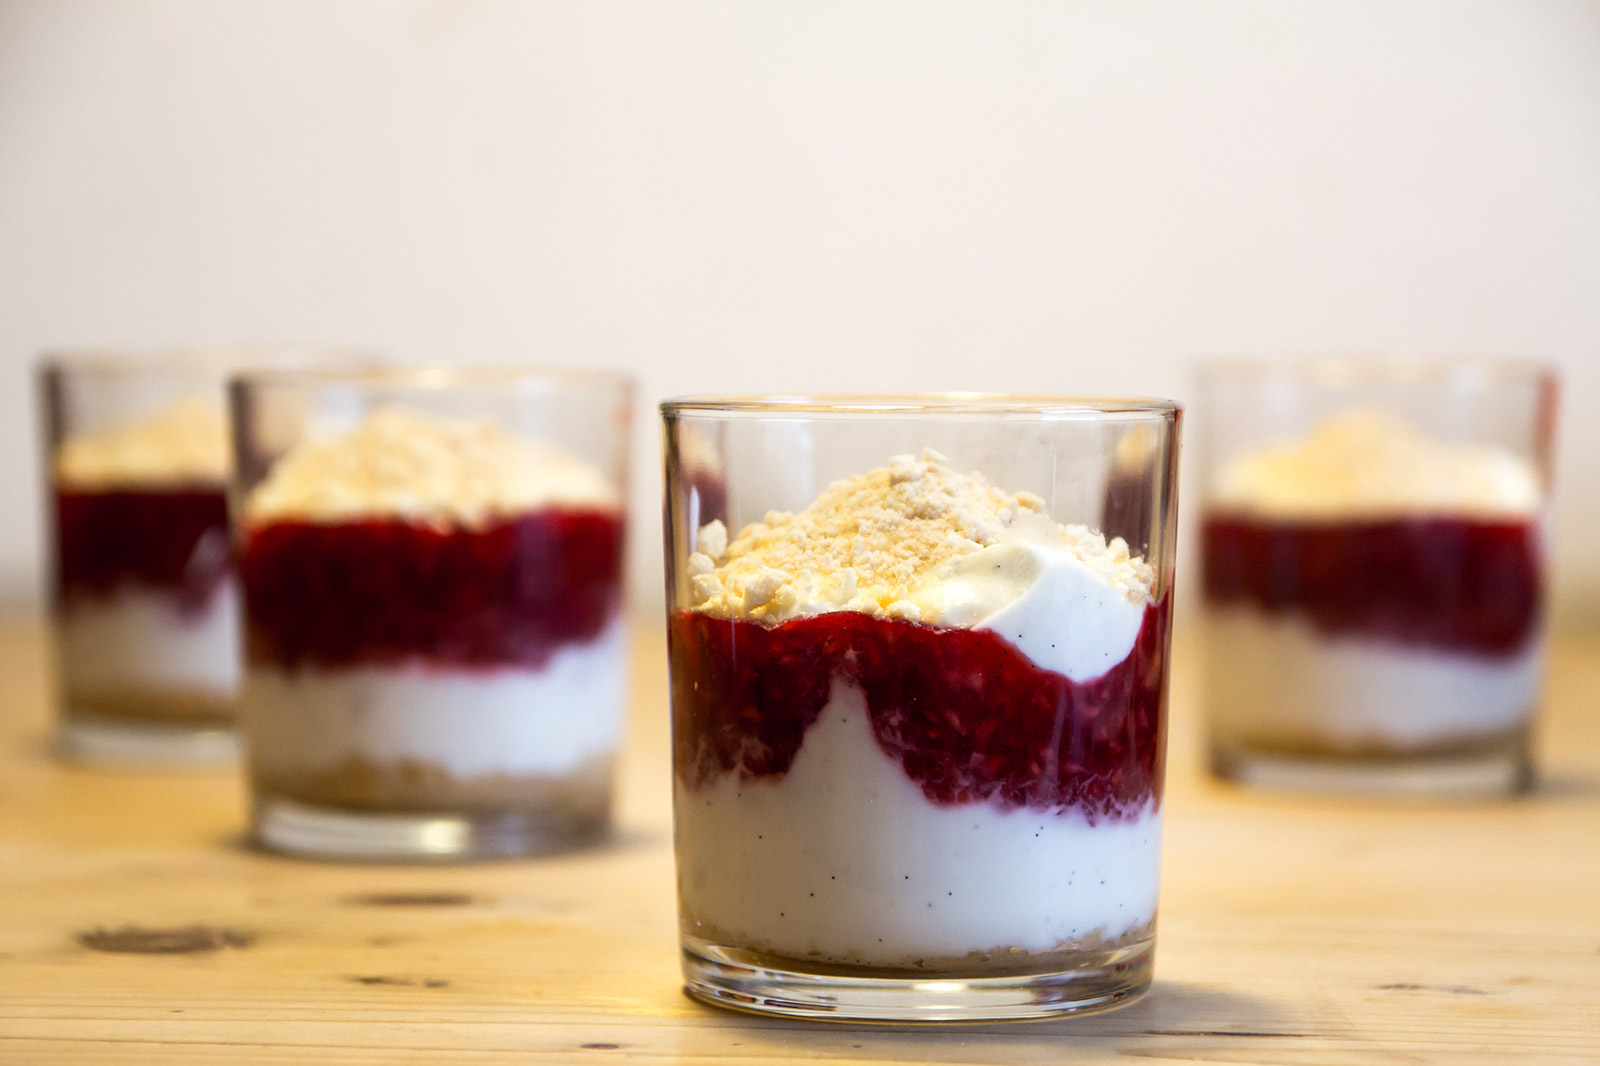 Nino's Schichten-Dessert mit Himbeeren, Joghurt und den knusprigen Biskottenbröseln